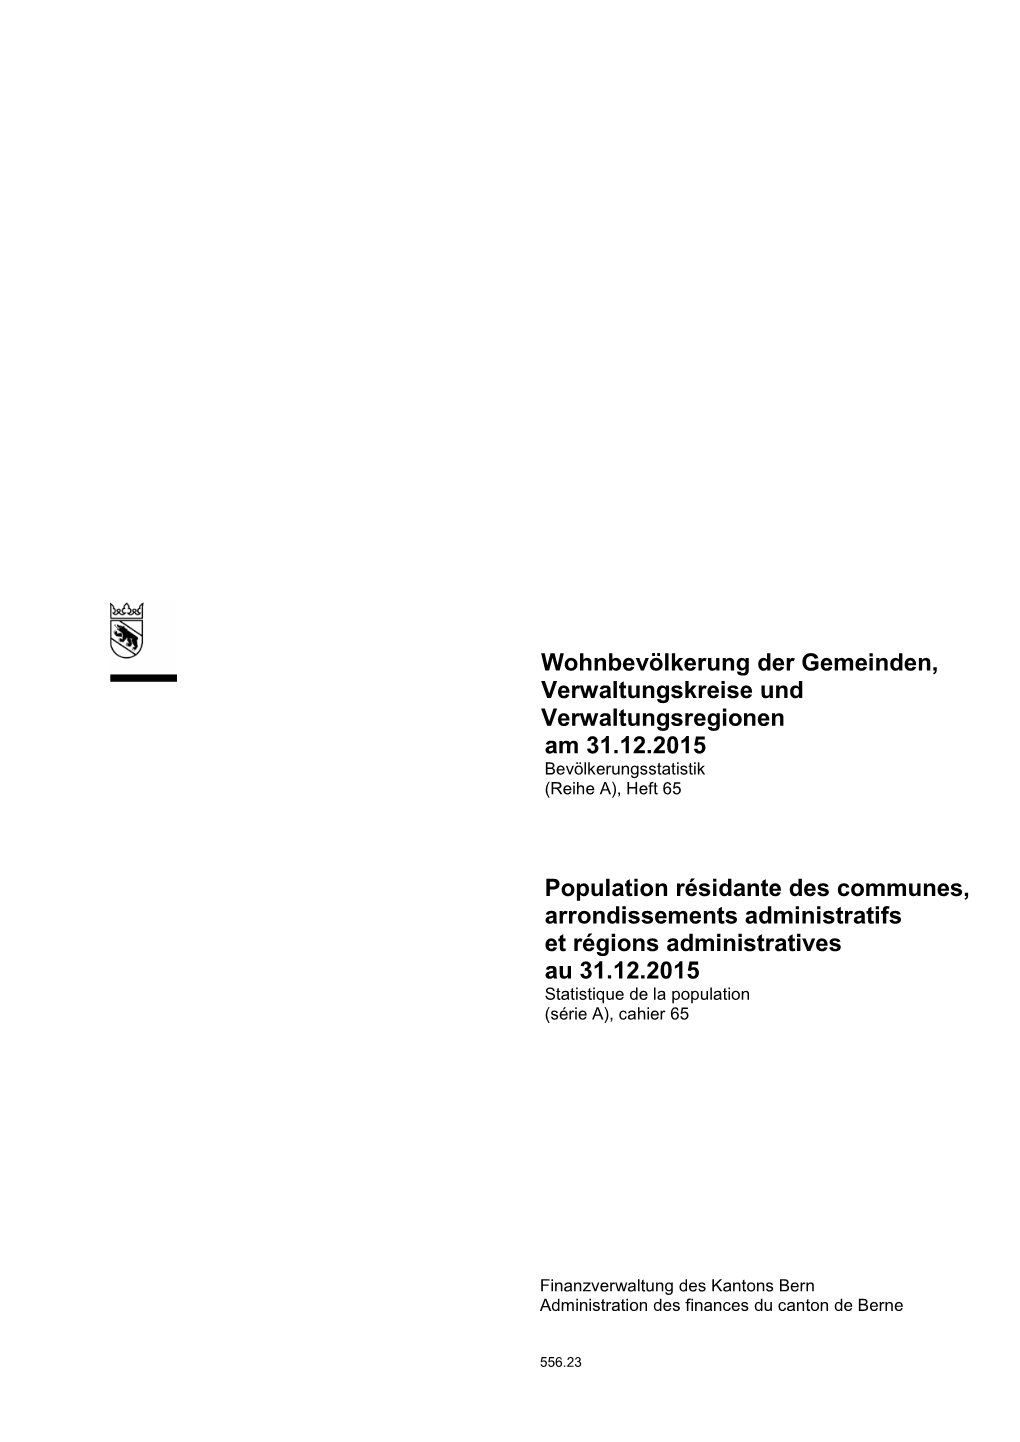 Wohnbevölkerung Der Gemeinden, Verwaltungskreise Und Verwaltungsregionen Am 31.12.2015 Bevölkerungsstatistik (Reihe A), Heft 65